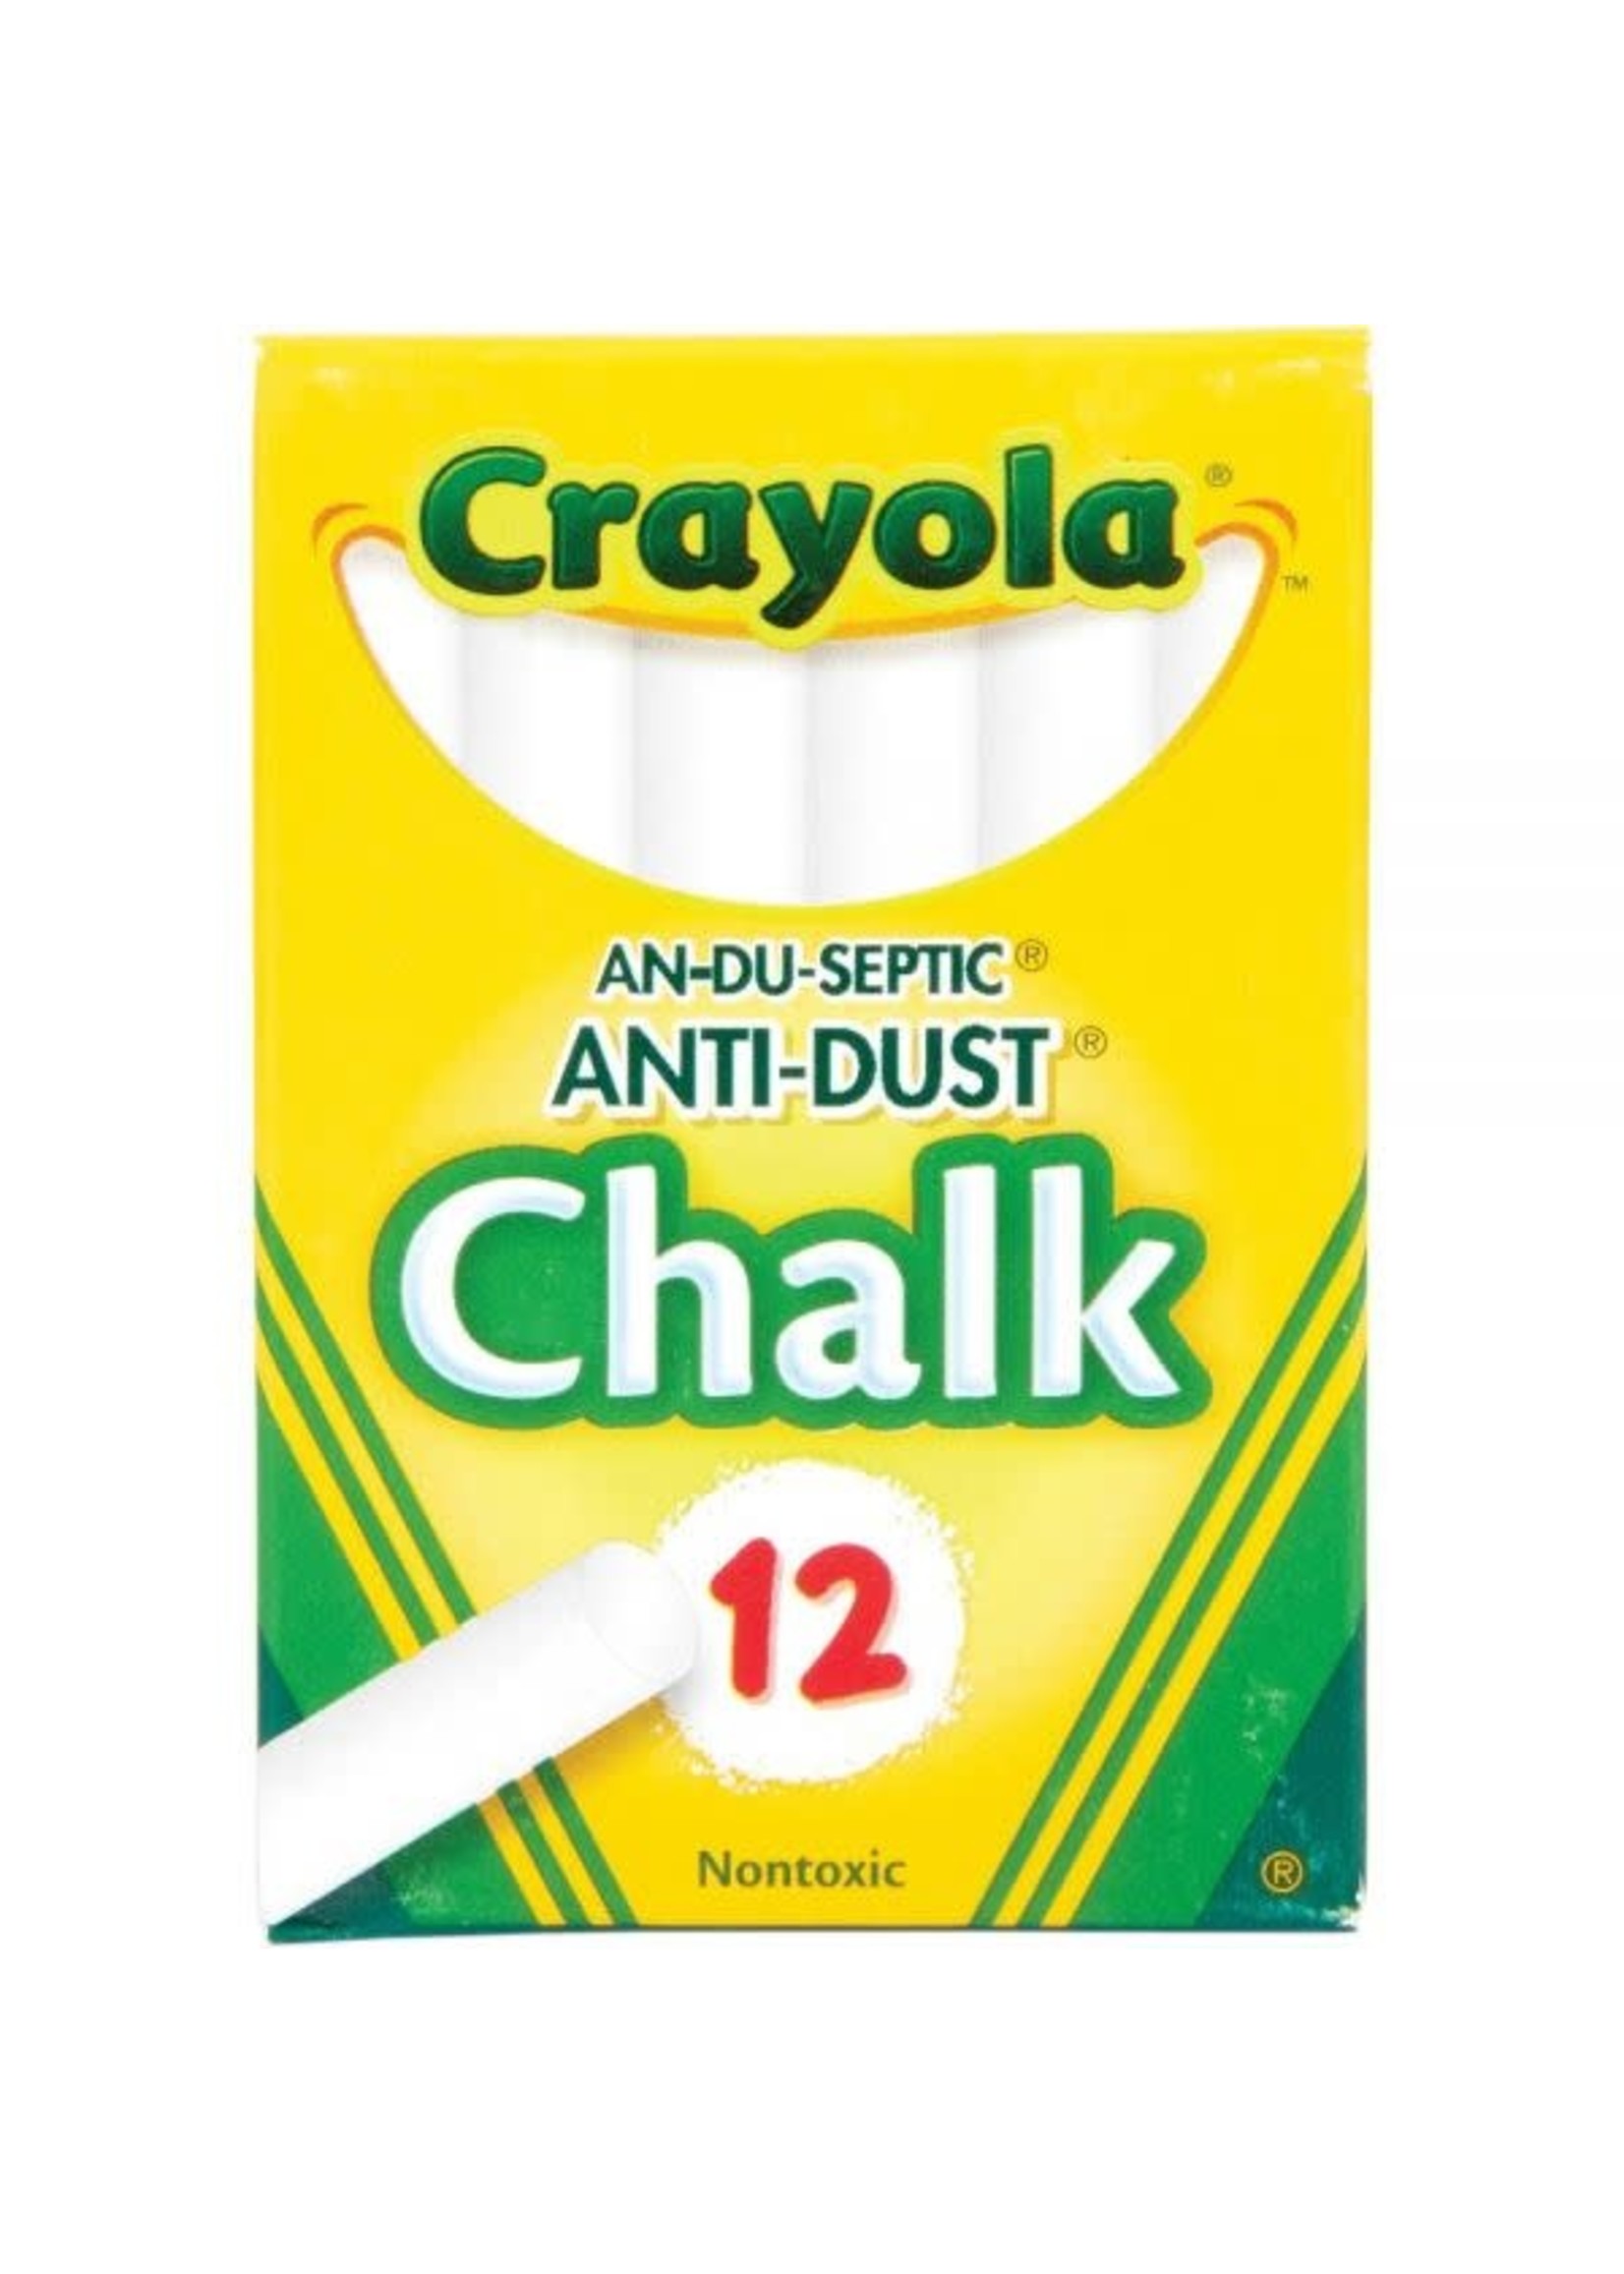 Crayola Chalk 12pc White